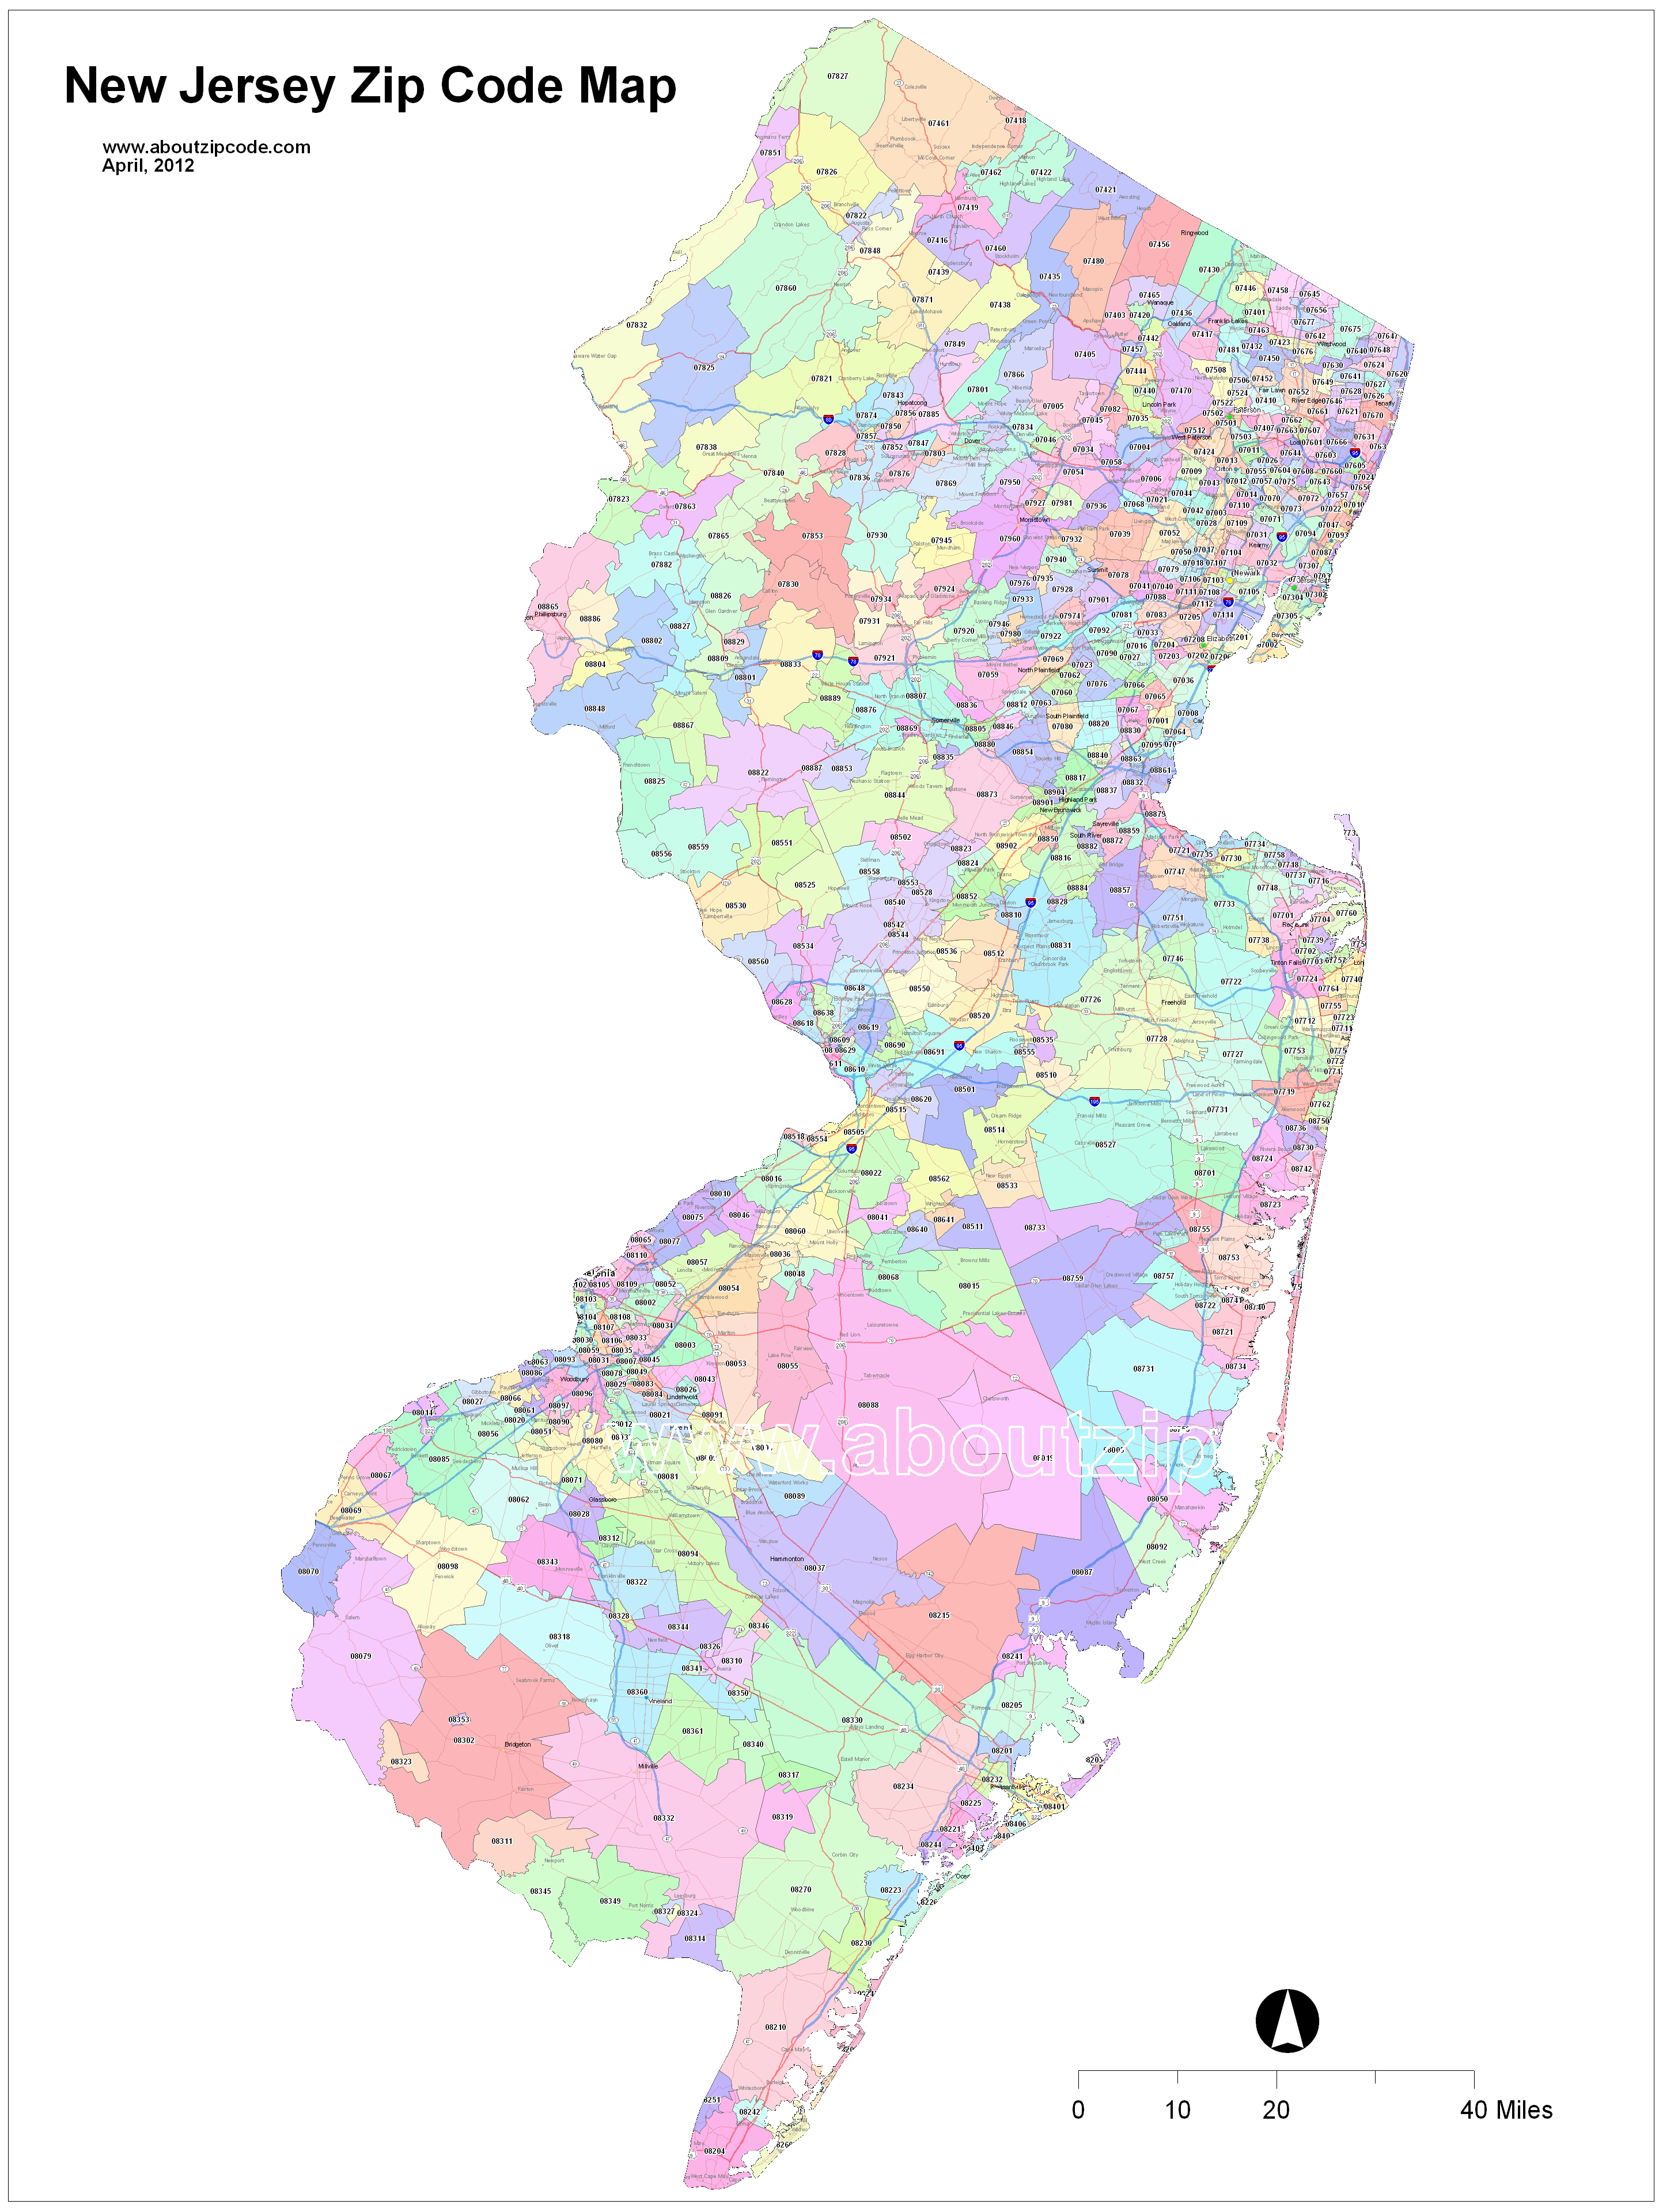 jersey city zip code map New Jersey Zip Code Maps Free New Jersey Zip Code Maps jersey city zip code map